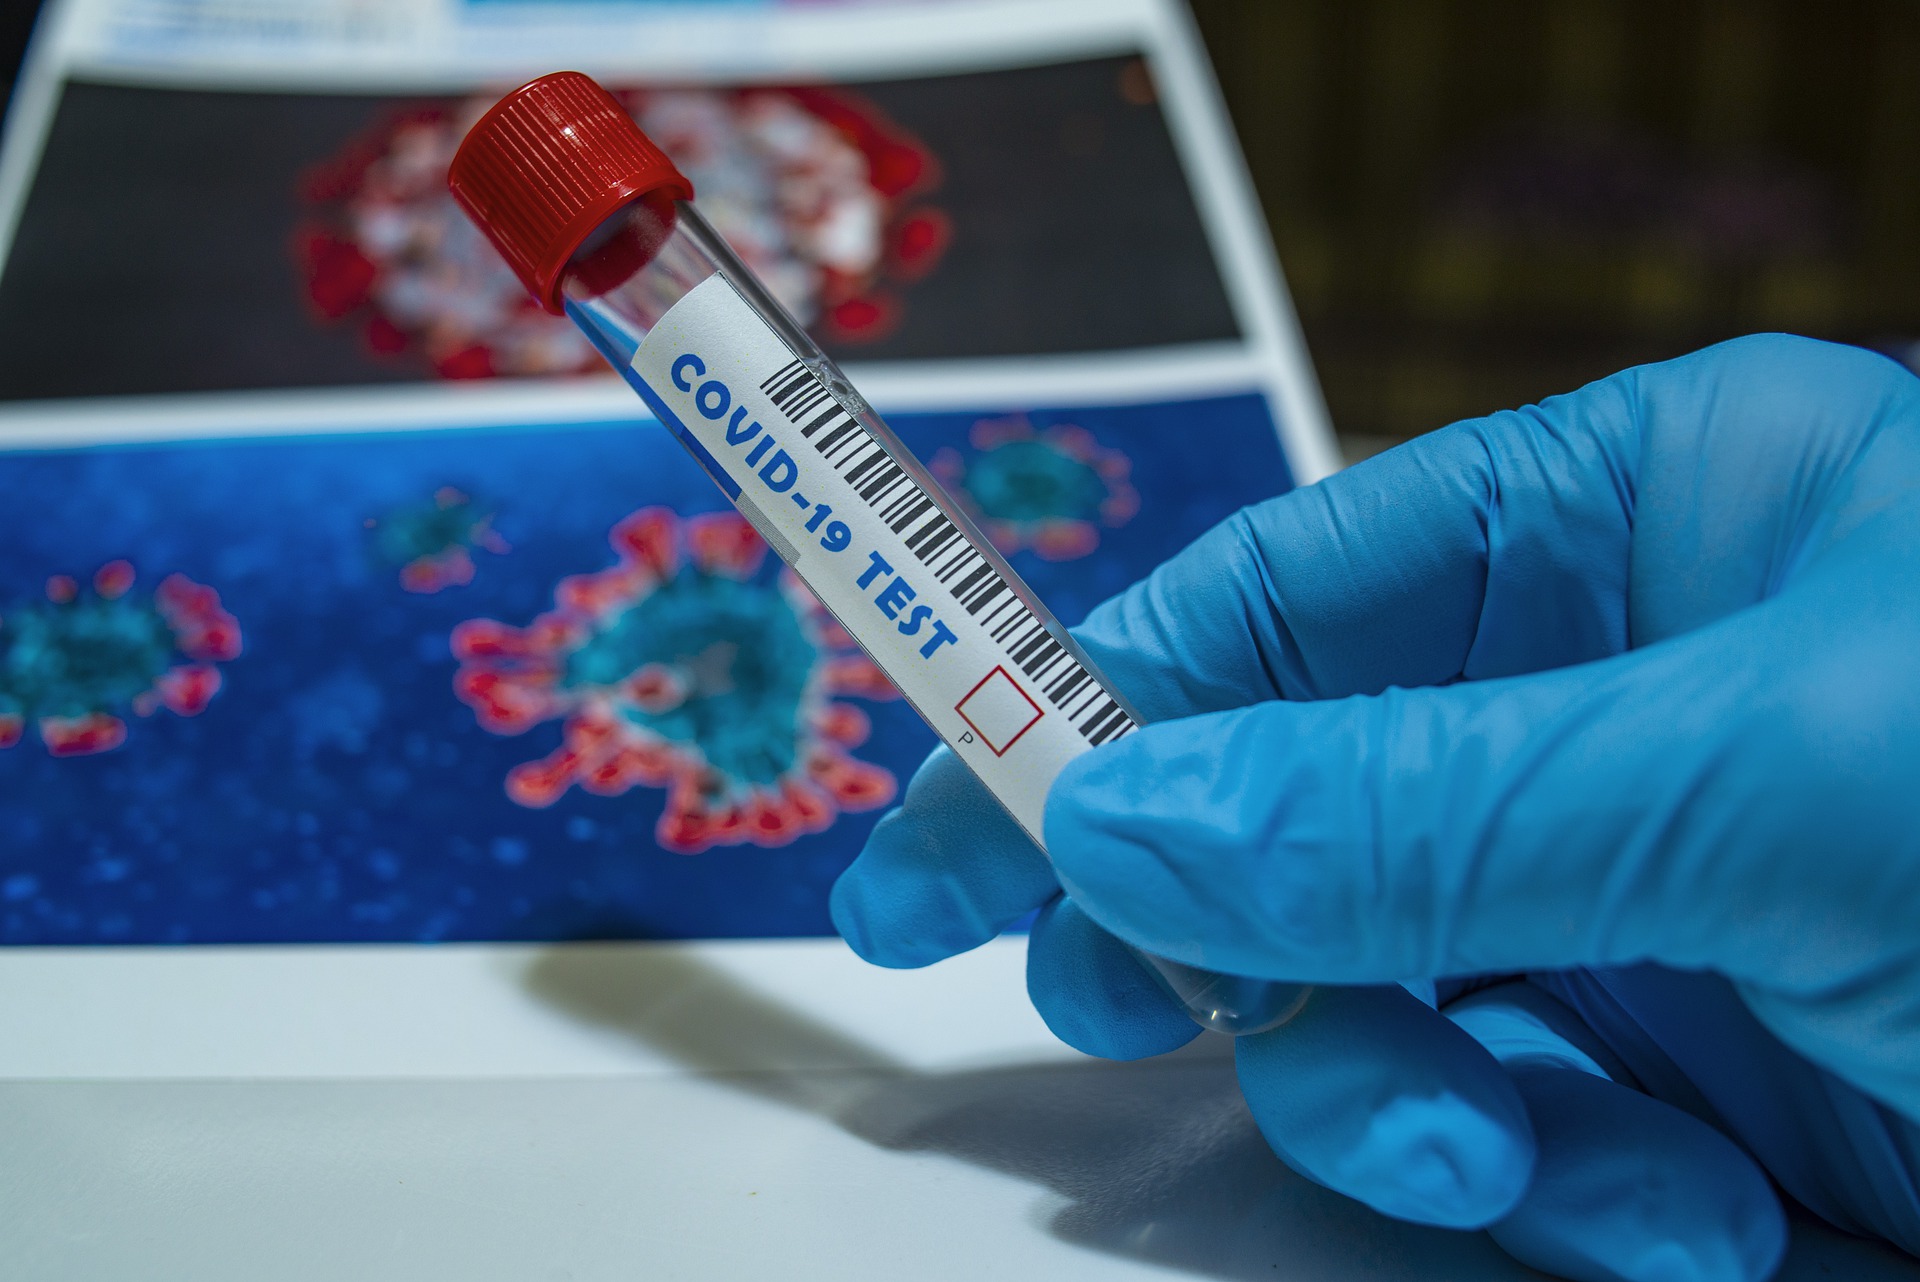 4495 тестов на коронавирус провели за сутки в Смоленской области